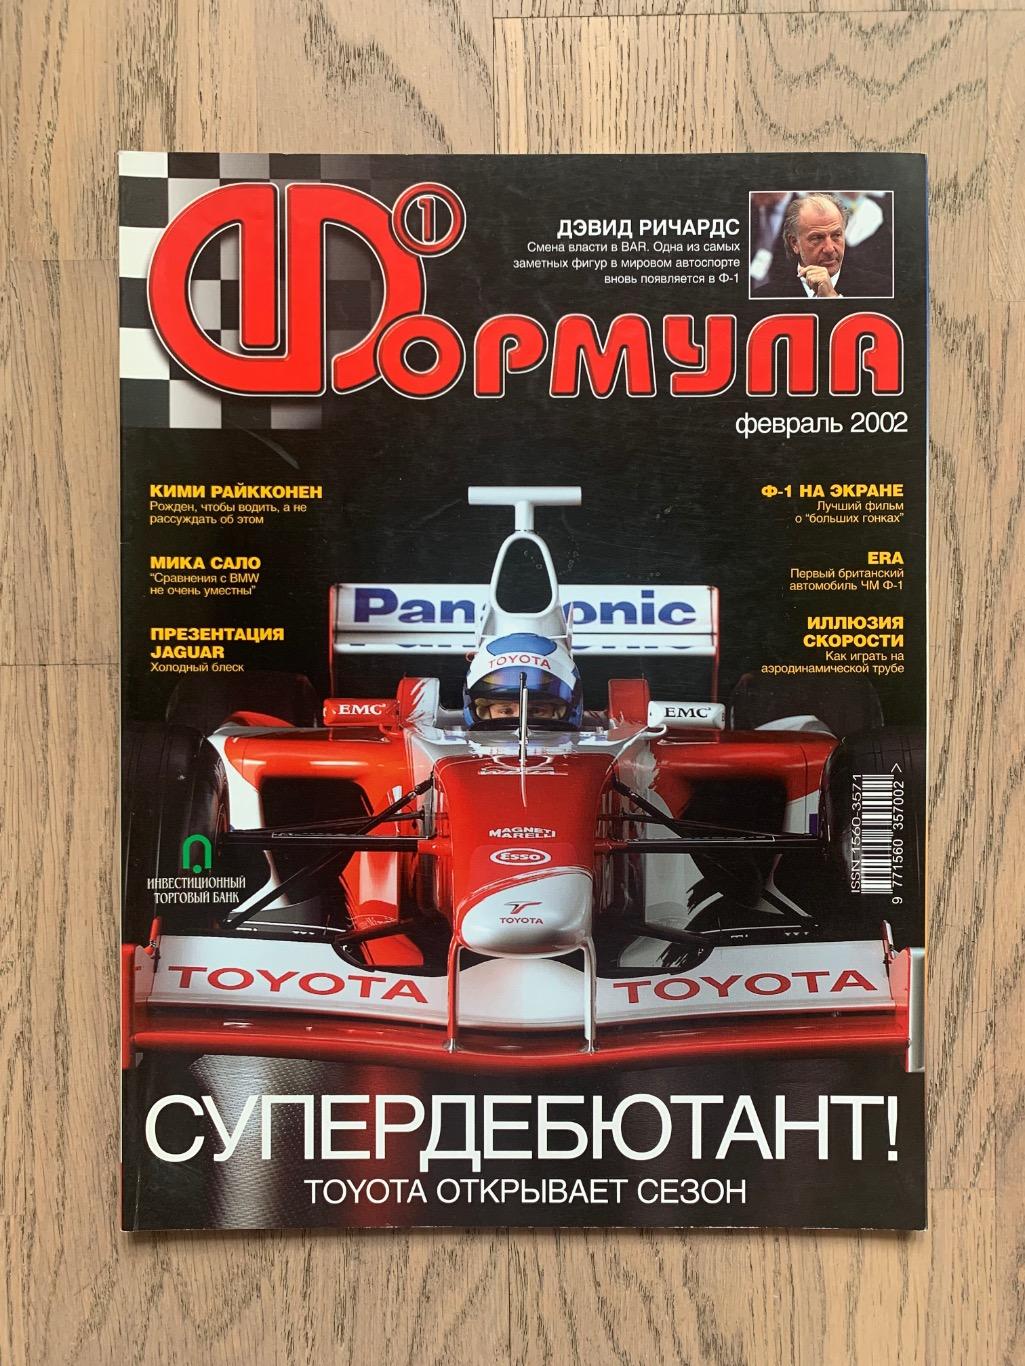 Журнал Формула 1 (Formula Magazine) / февраль 2002